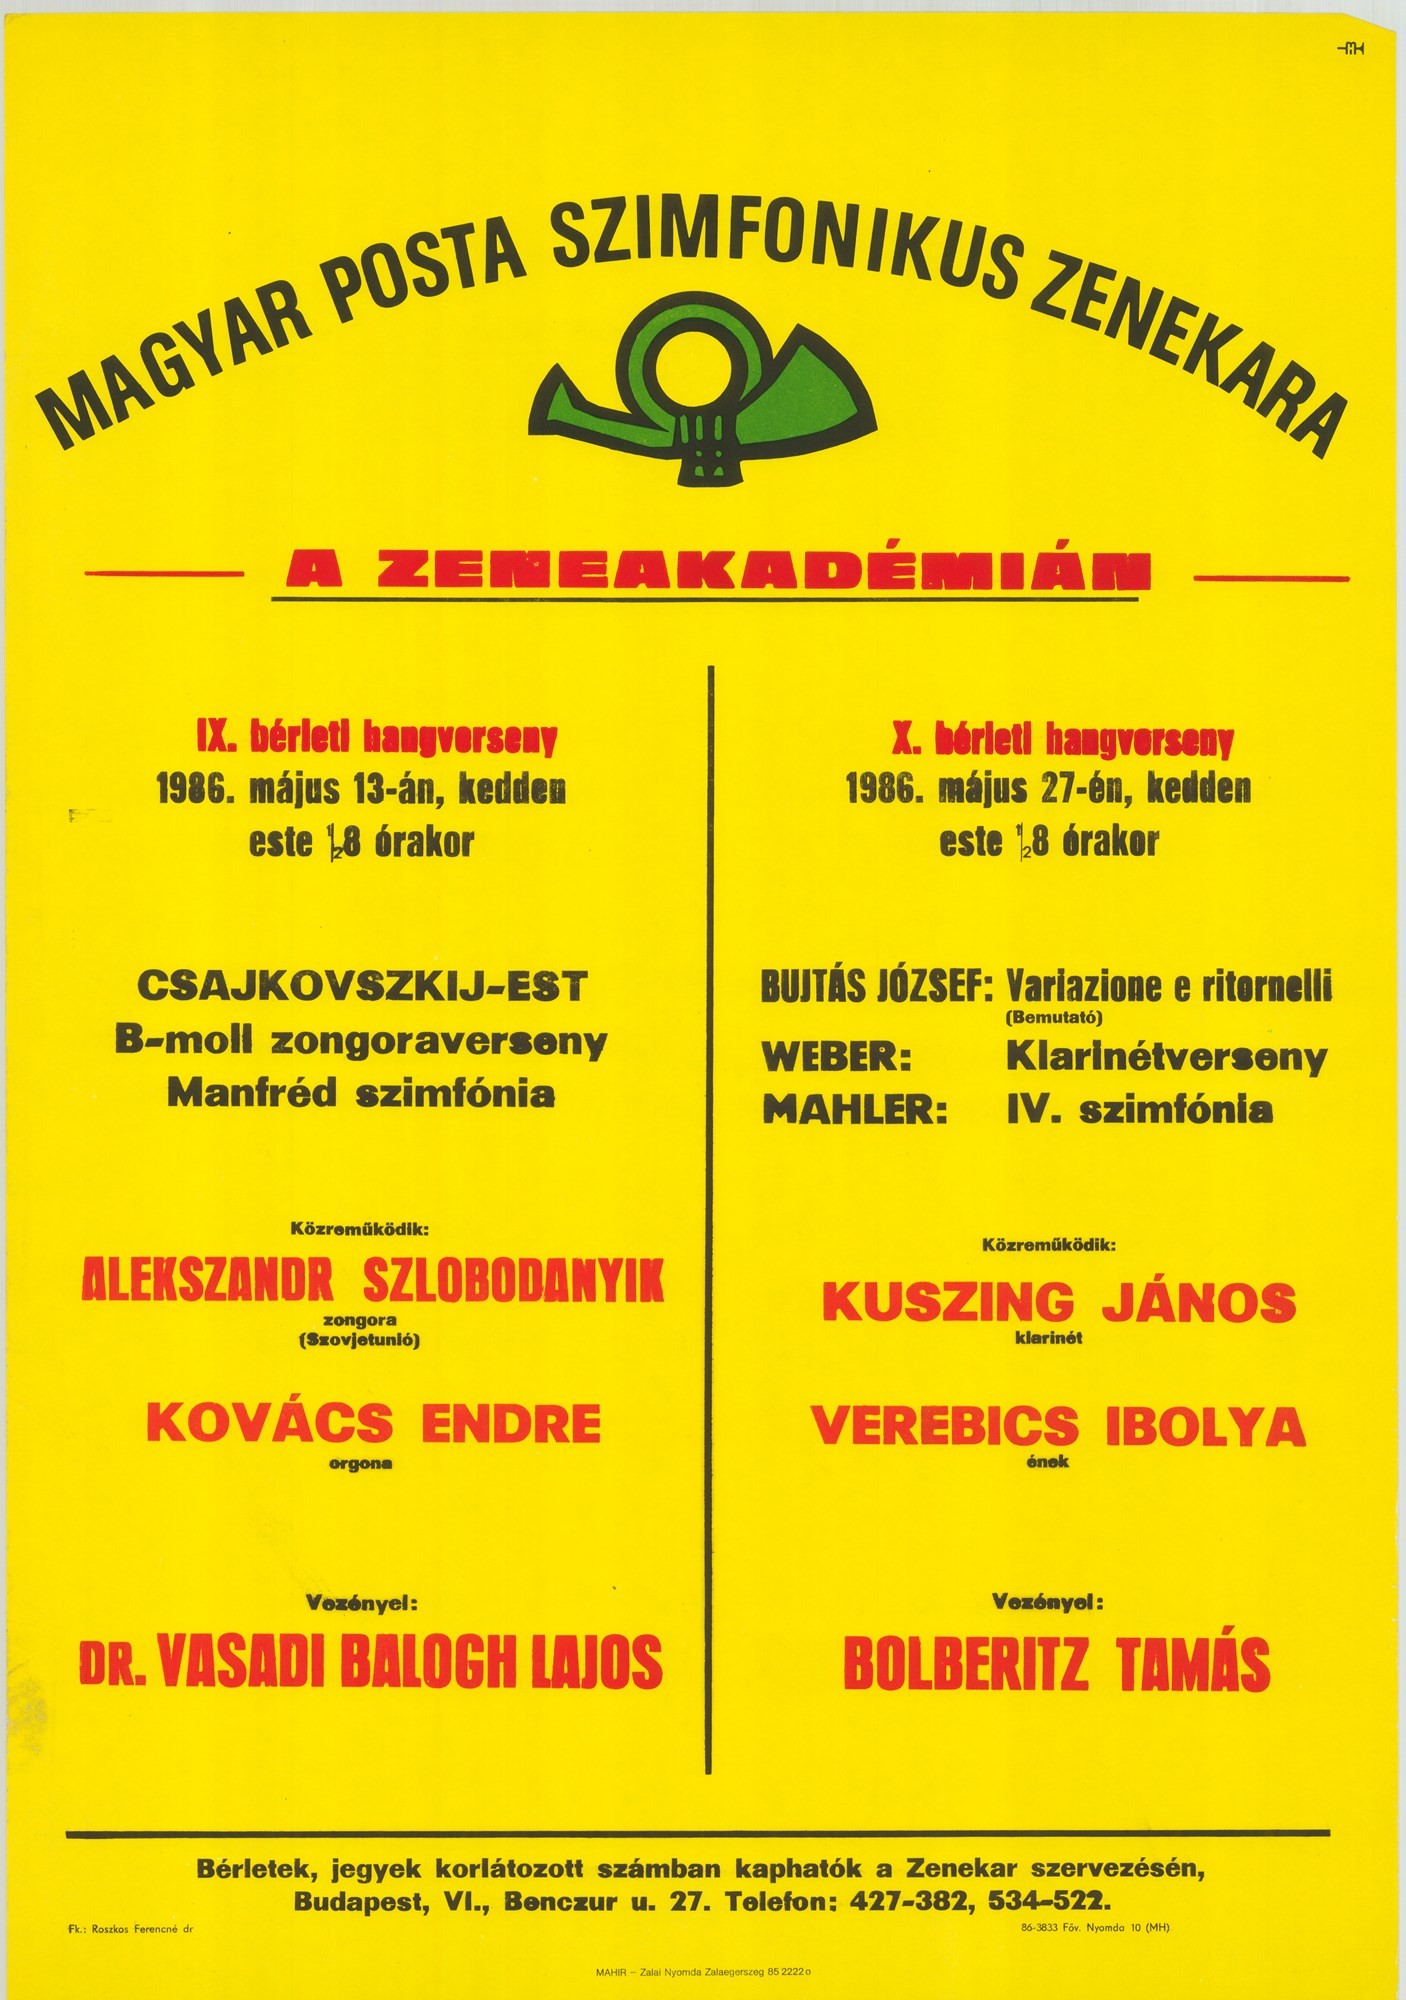 Plakát - Postás Szimfonikus Zenekar a Zeneakadémián, 1986 (Postamúzeum CC BY-NC-SA)